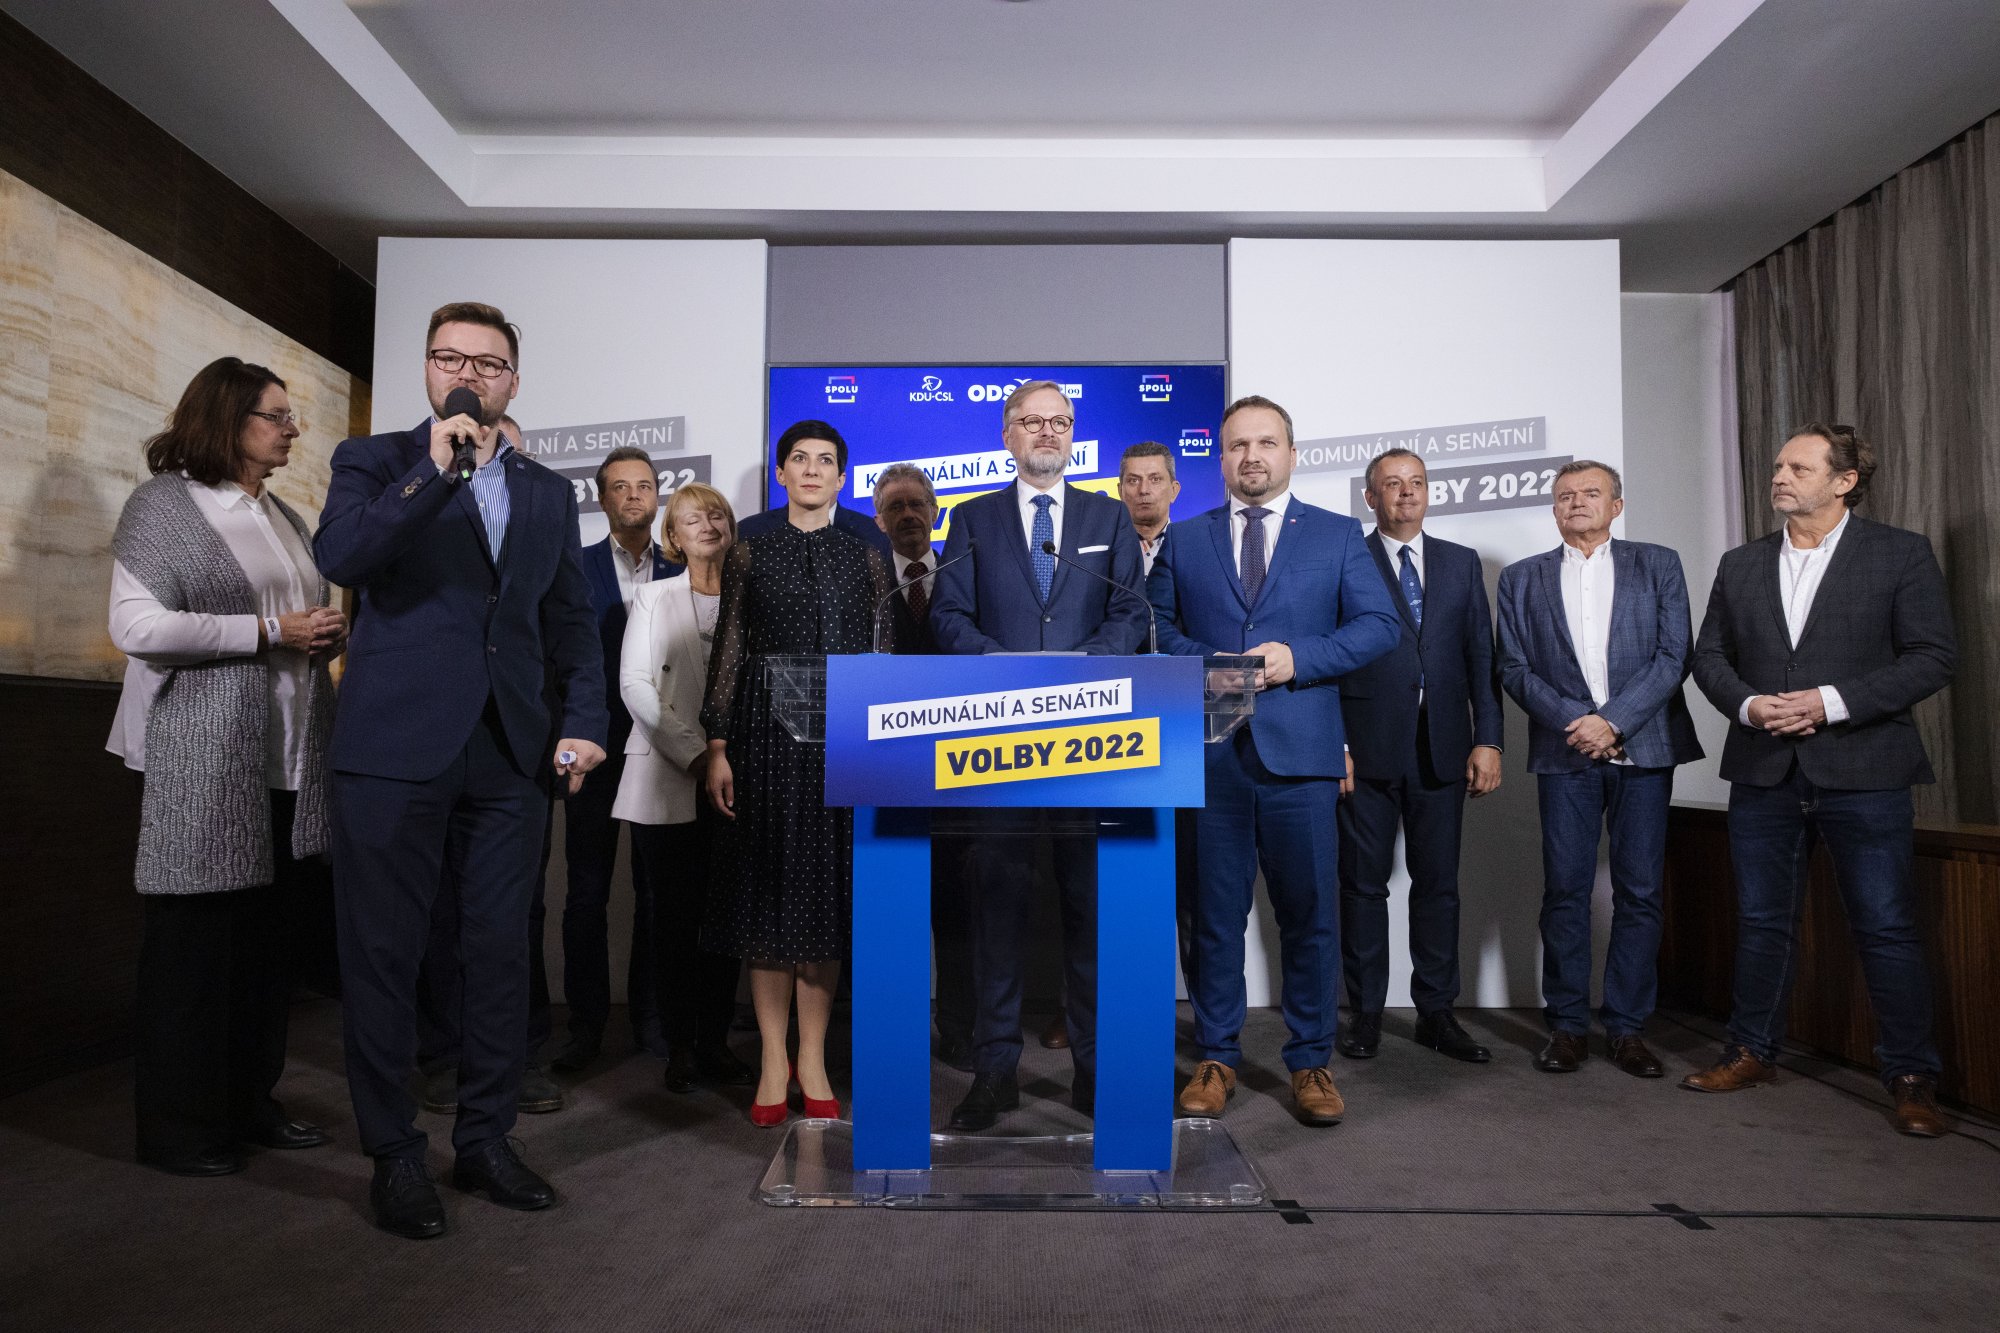 Vítězství koalice SPOLU i demokracie, SPOLU uspělo ve dvaceti senátních obvodech